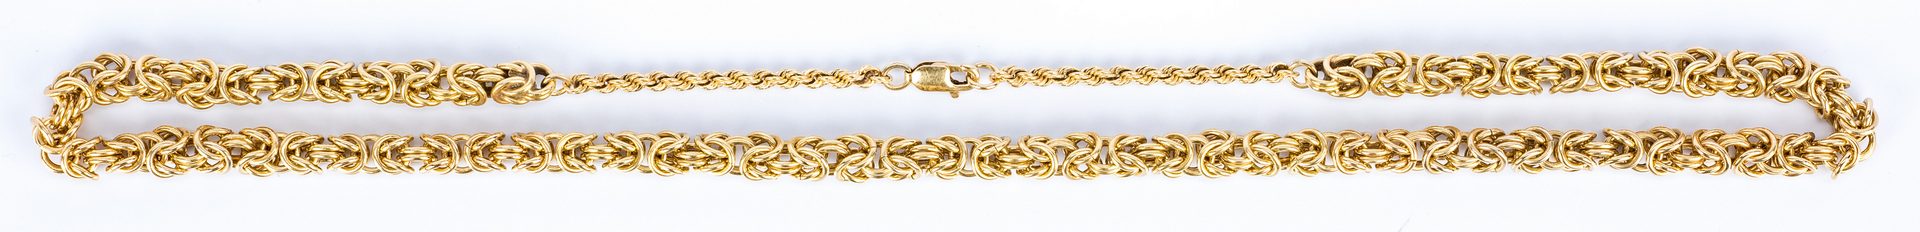 Lot 47: 14K Byzantine Link Necklace, 65.9 grams